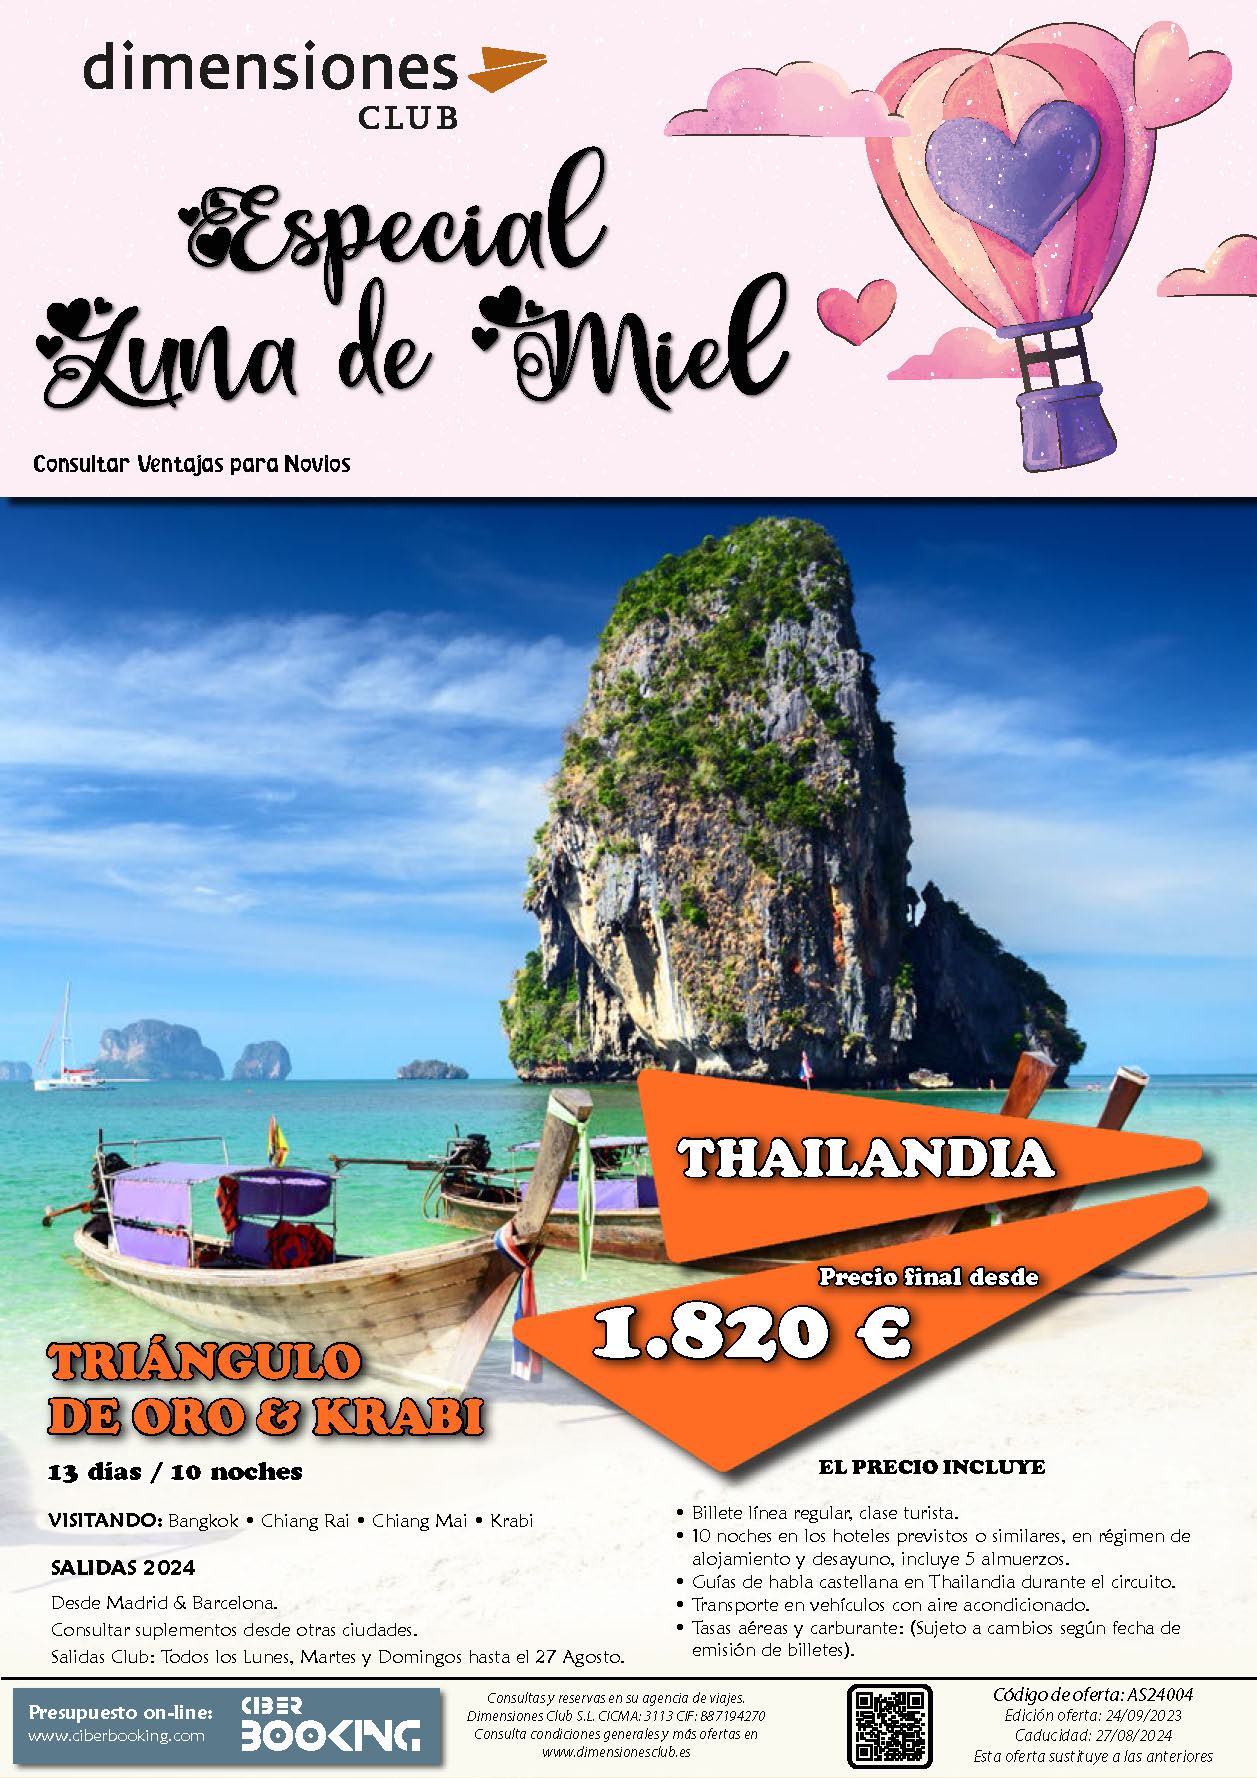 Oferta Dimensiones Club Luna de Miel en Thailandia Triangulo de Oro y Krabi 13 dias salidas desde Madrid y Barcelona Enero a Agosto 2024